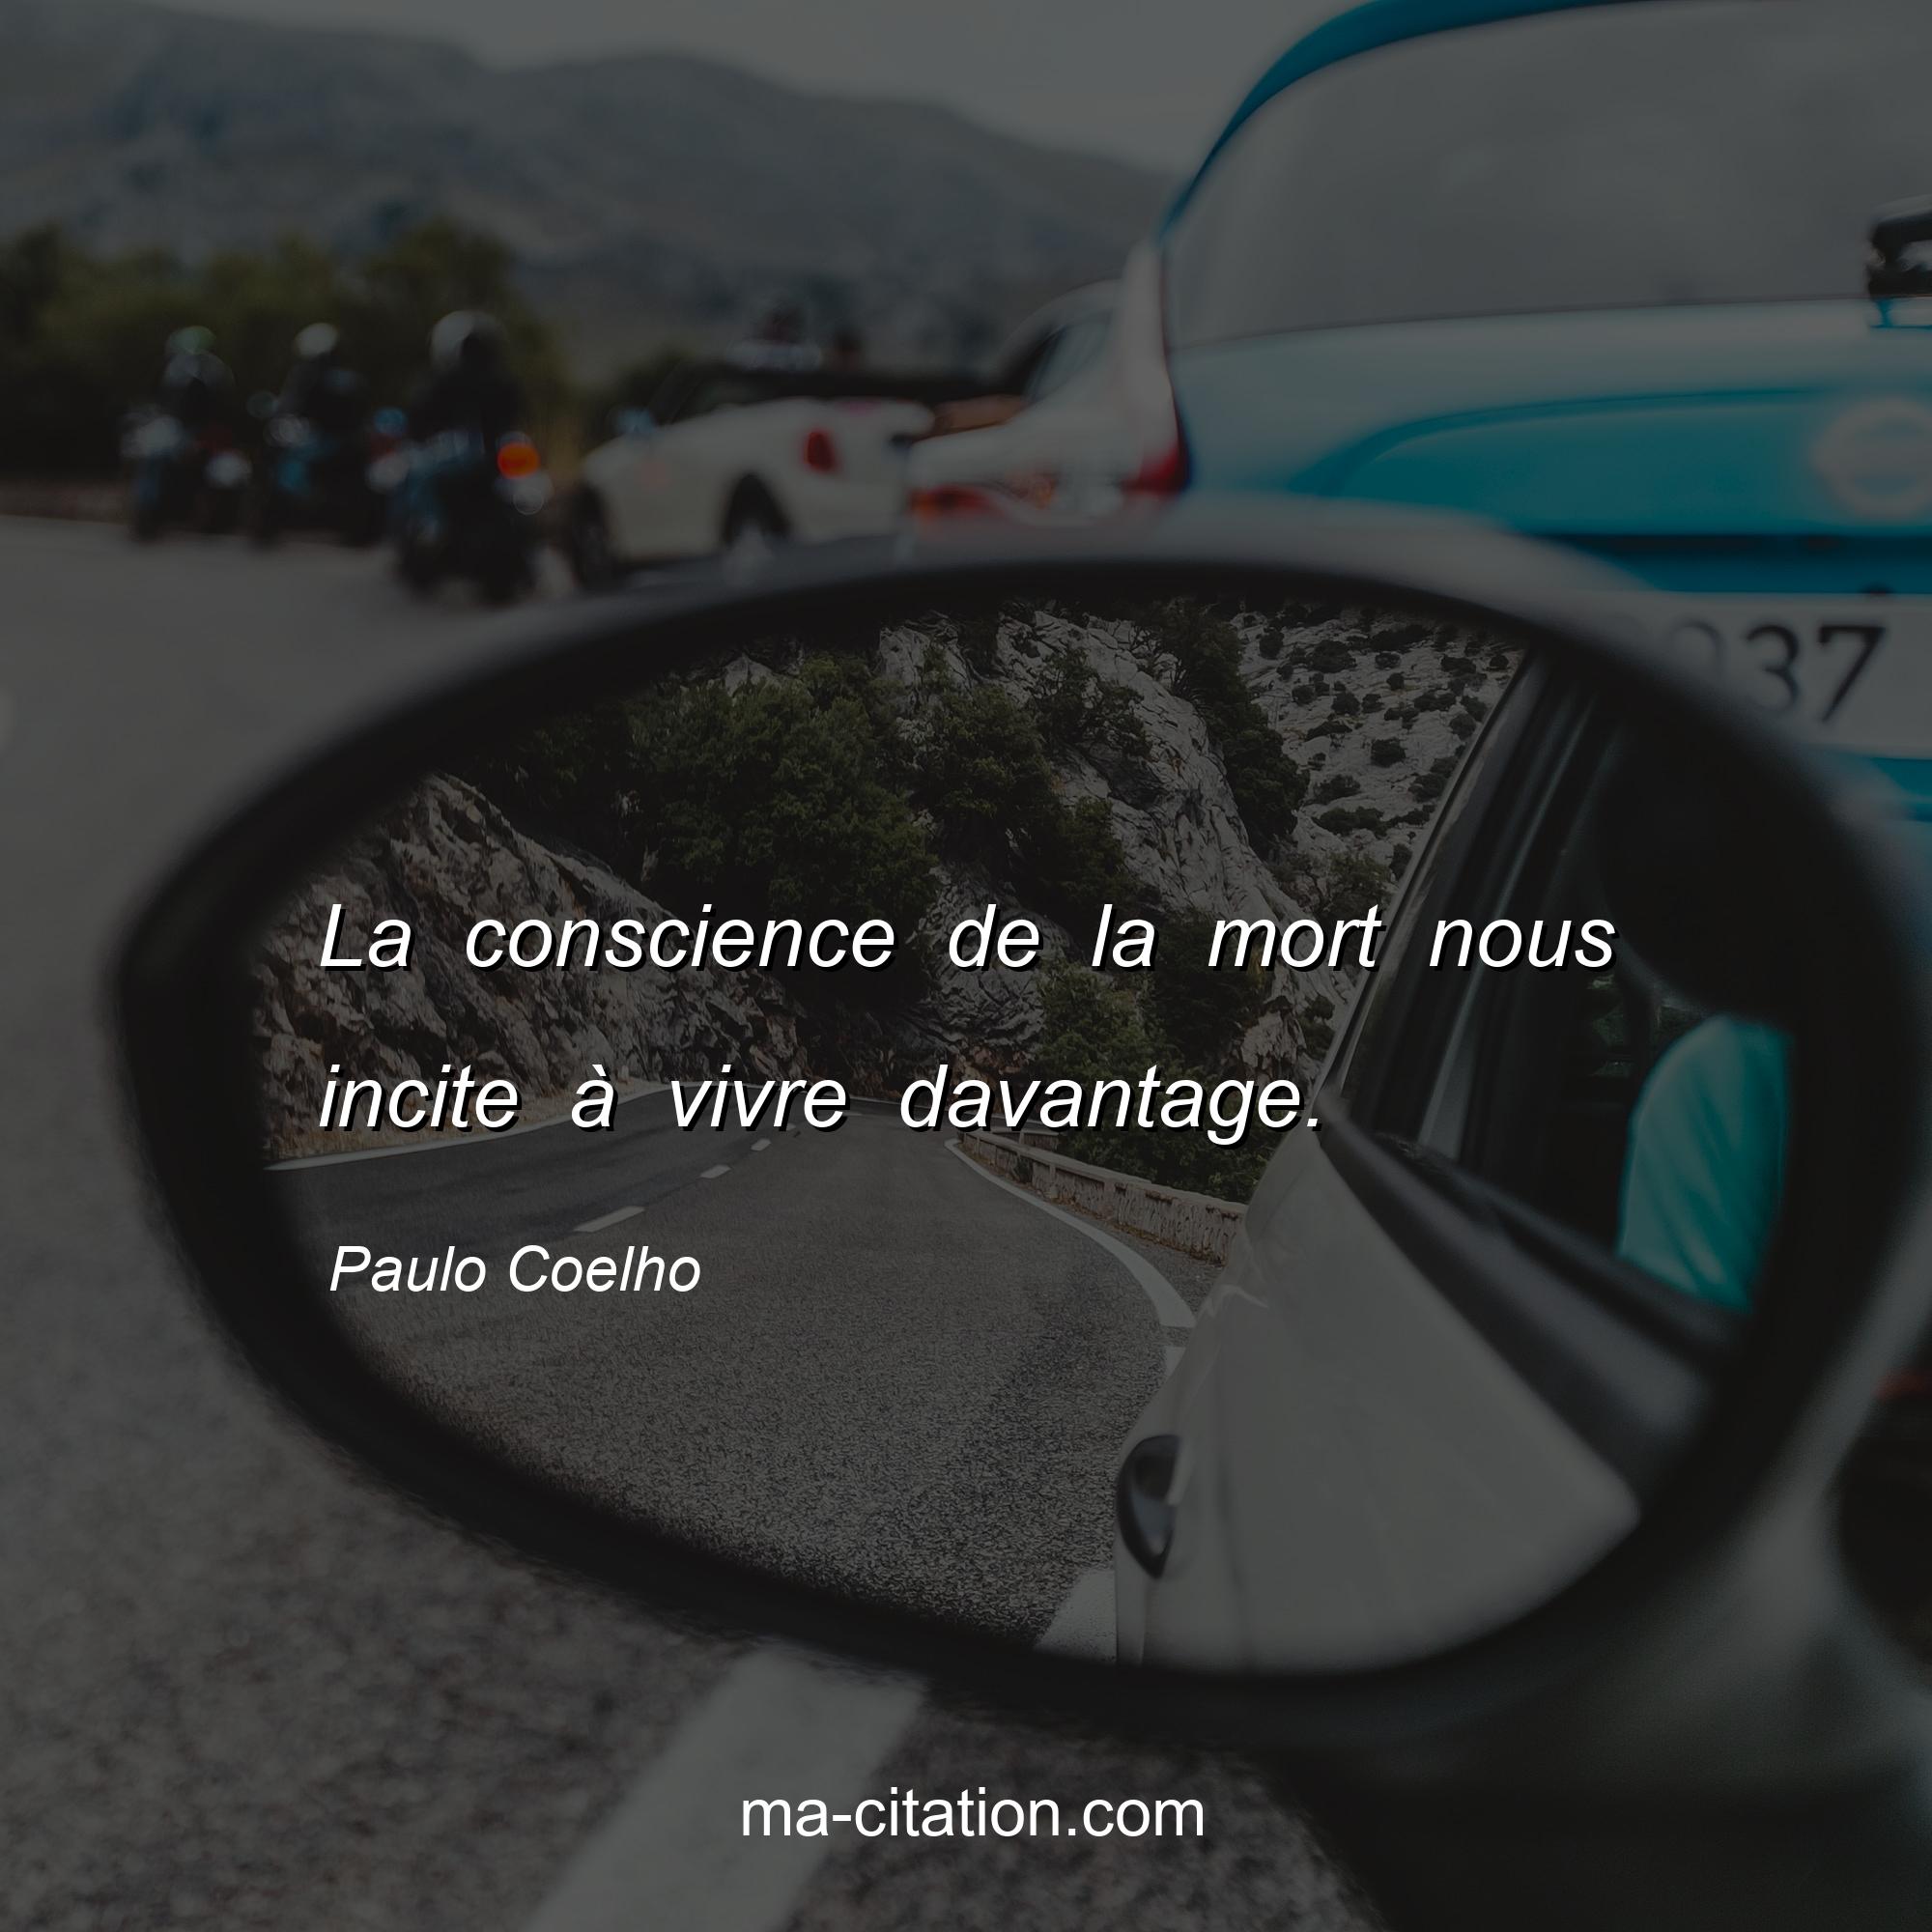 Paulo Coelho : La conscience de la mort nous incite à vivre davantage.